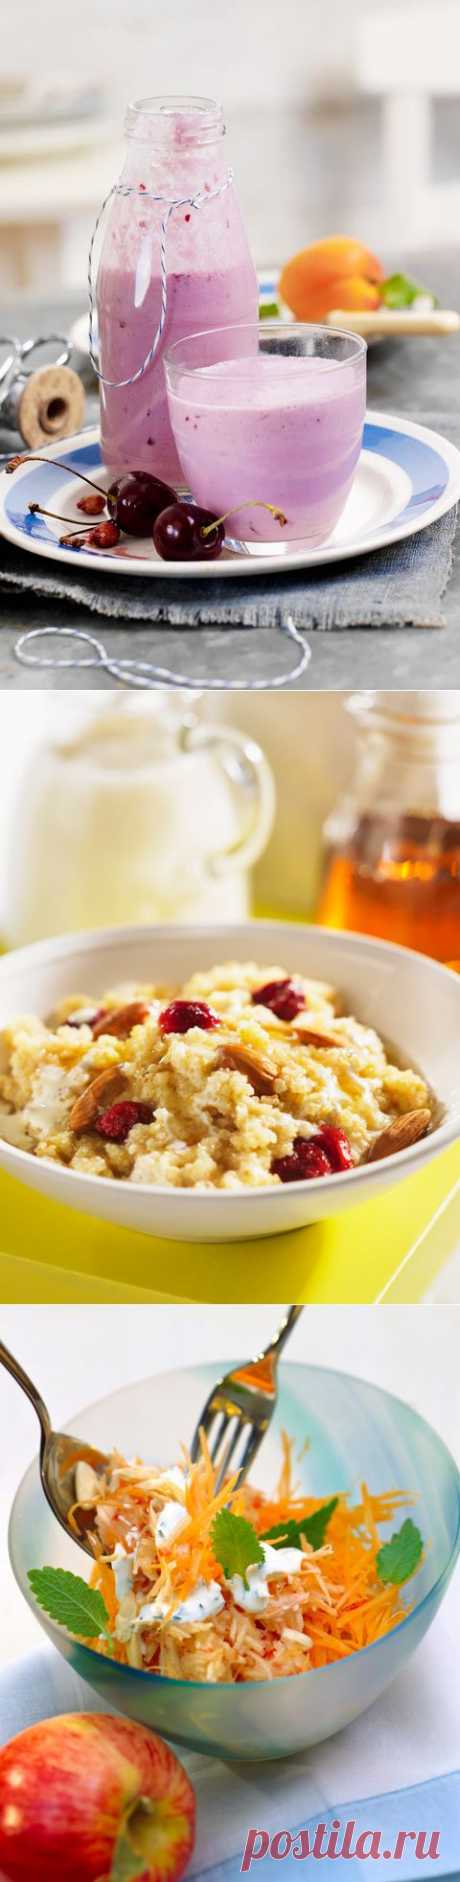 5 завтраков, которые помогут похудеть | статьи про похудение! | Леди Mail.Ru